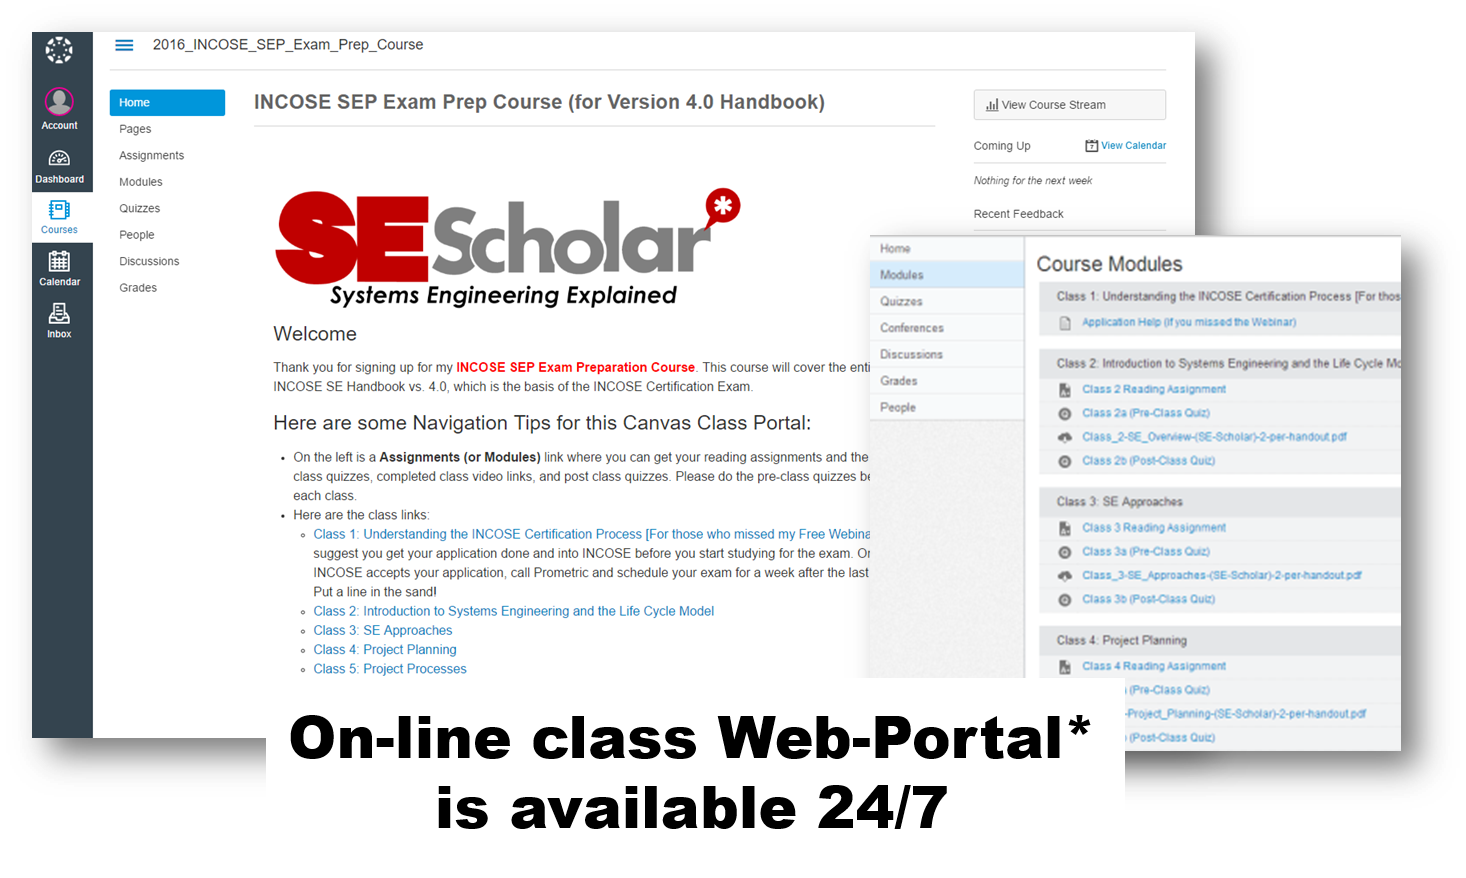 On-line class web-portal open 24/7